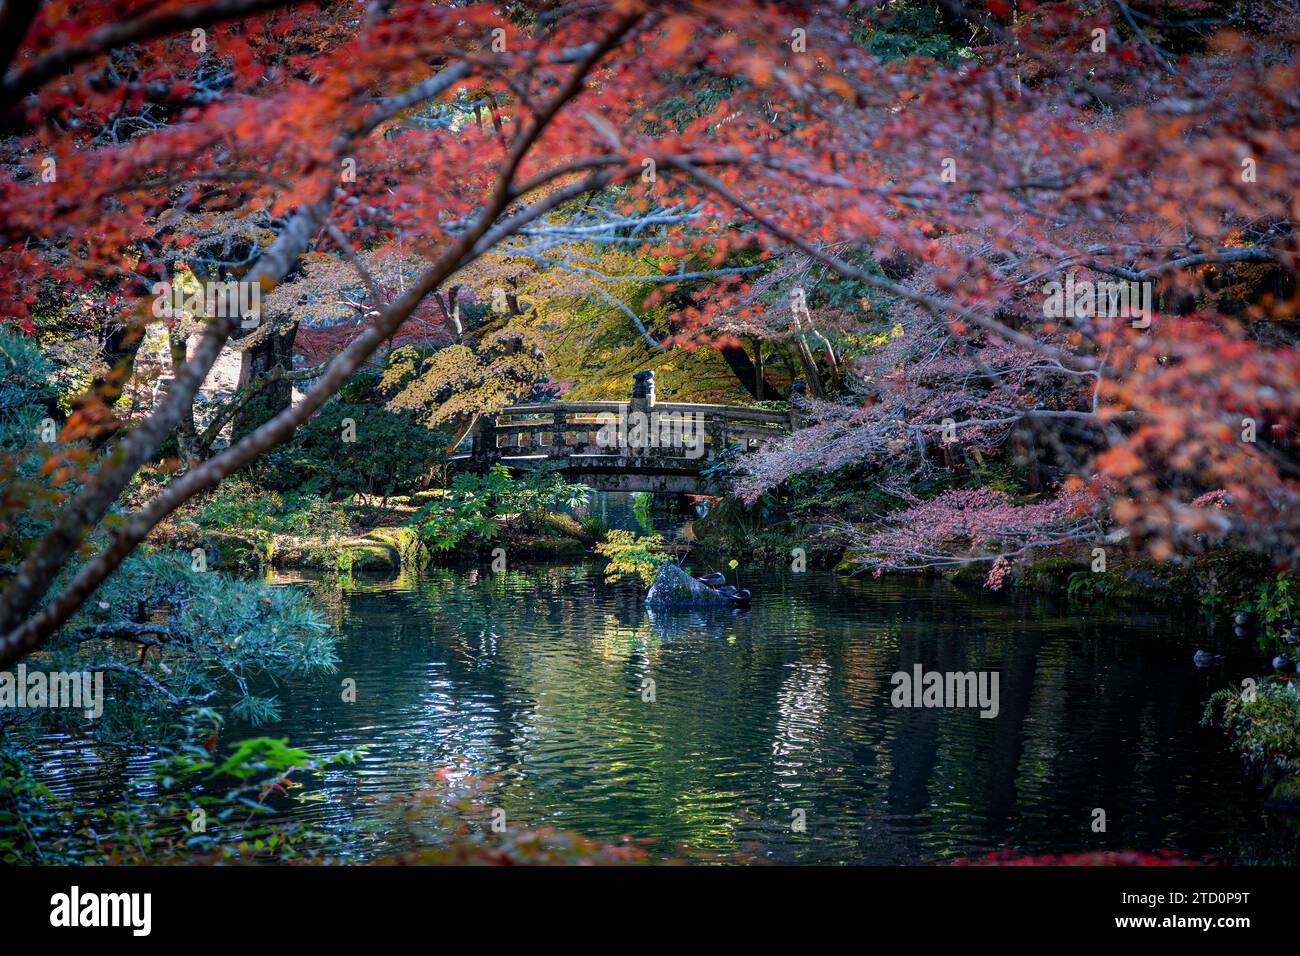 detail of Naritasan Park in Narita, Japan Stock Photo